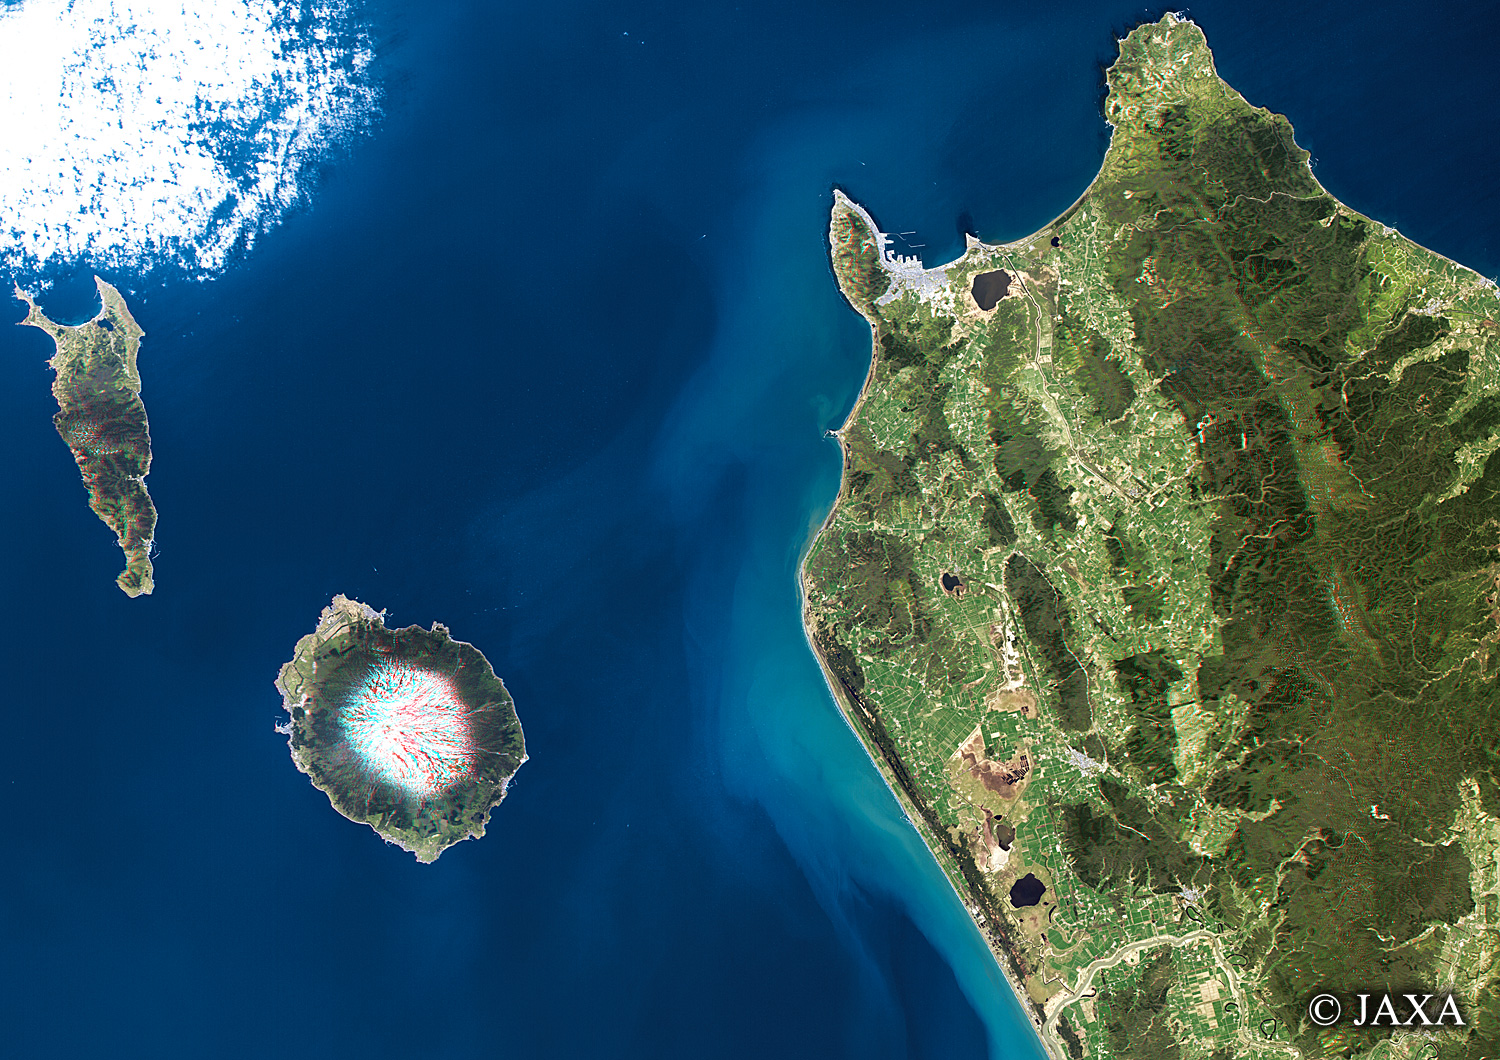 だいちから見た日本の都市 礼文島・利尻島・稚内立体視画像:衛星画像